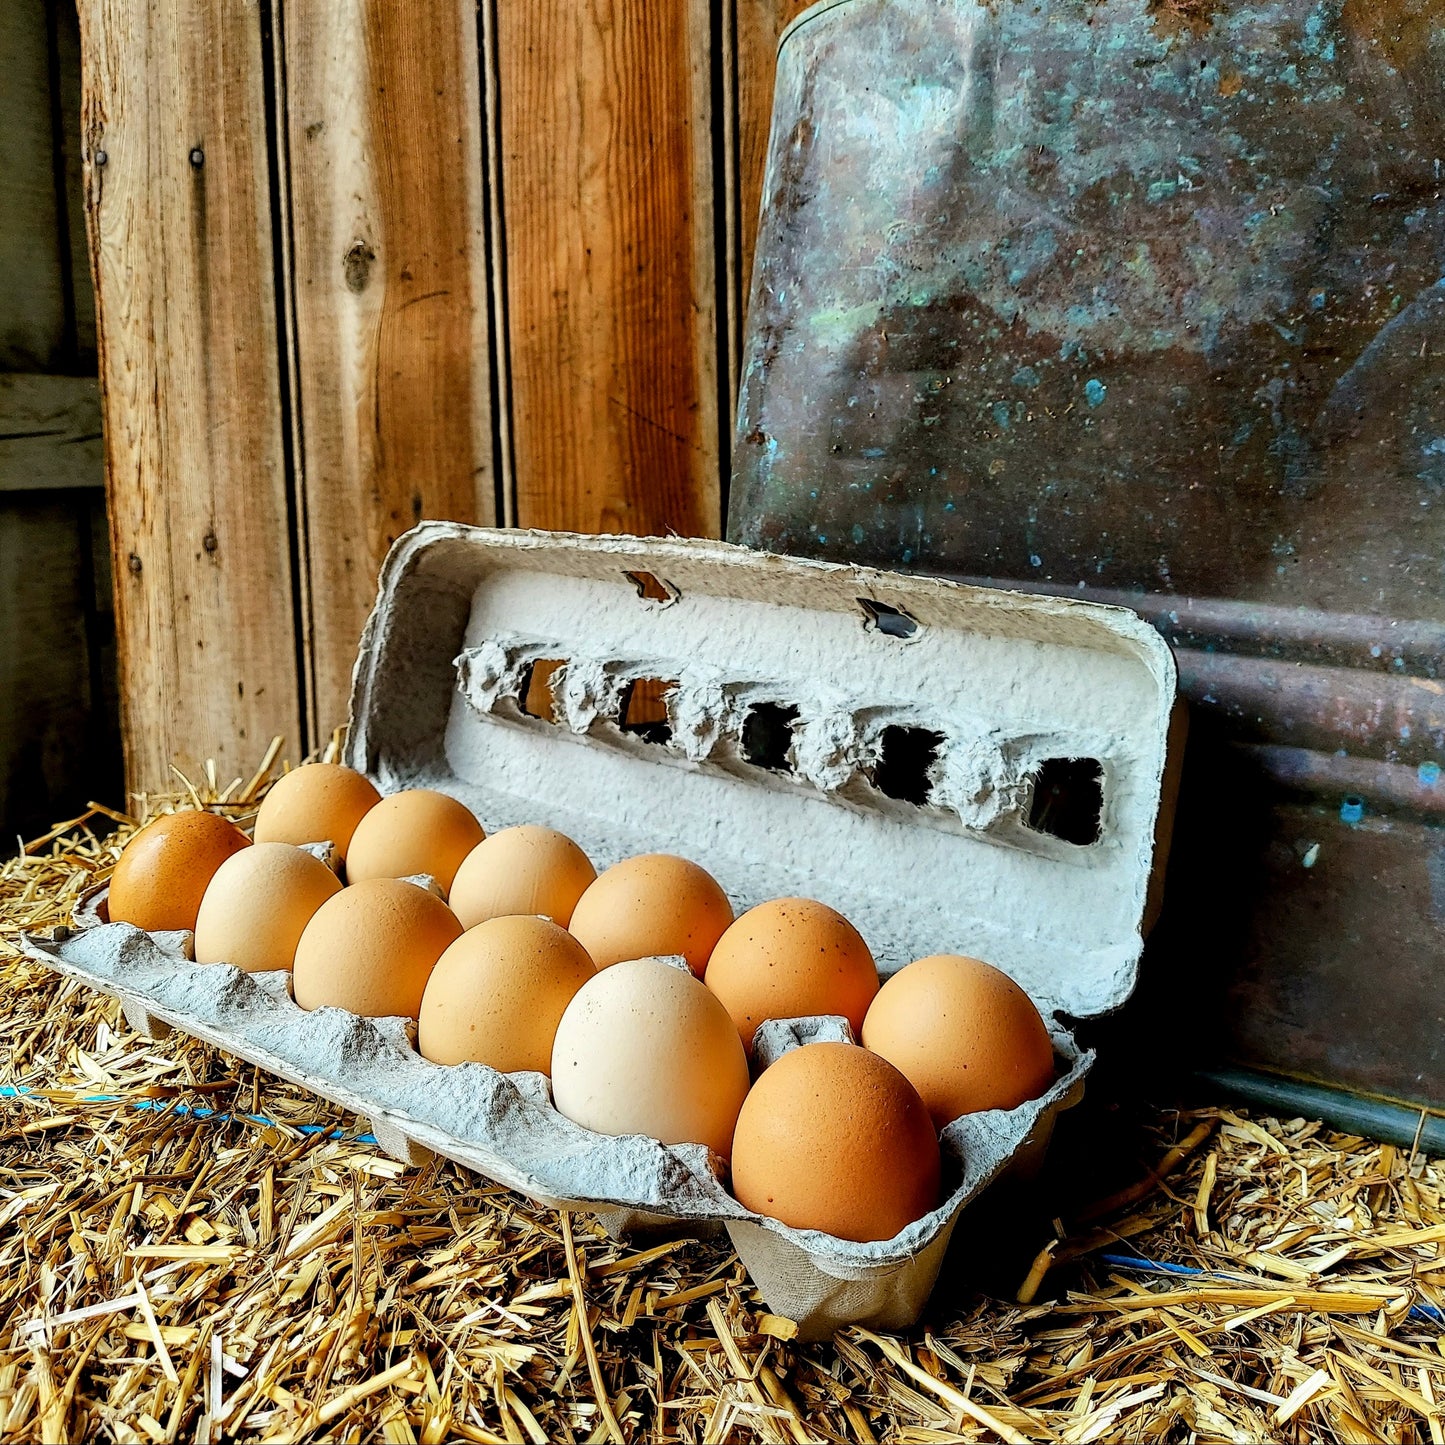 Pasture Raised Organic Large Eggs - No Corn / No Soy - 4 dozen bundle